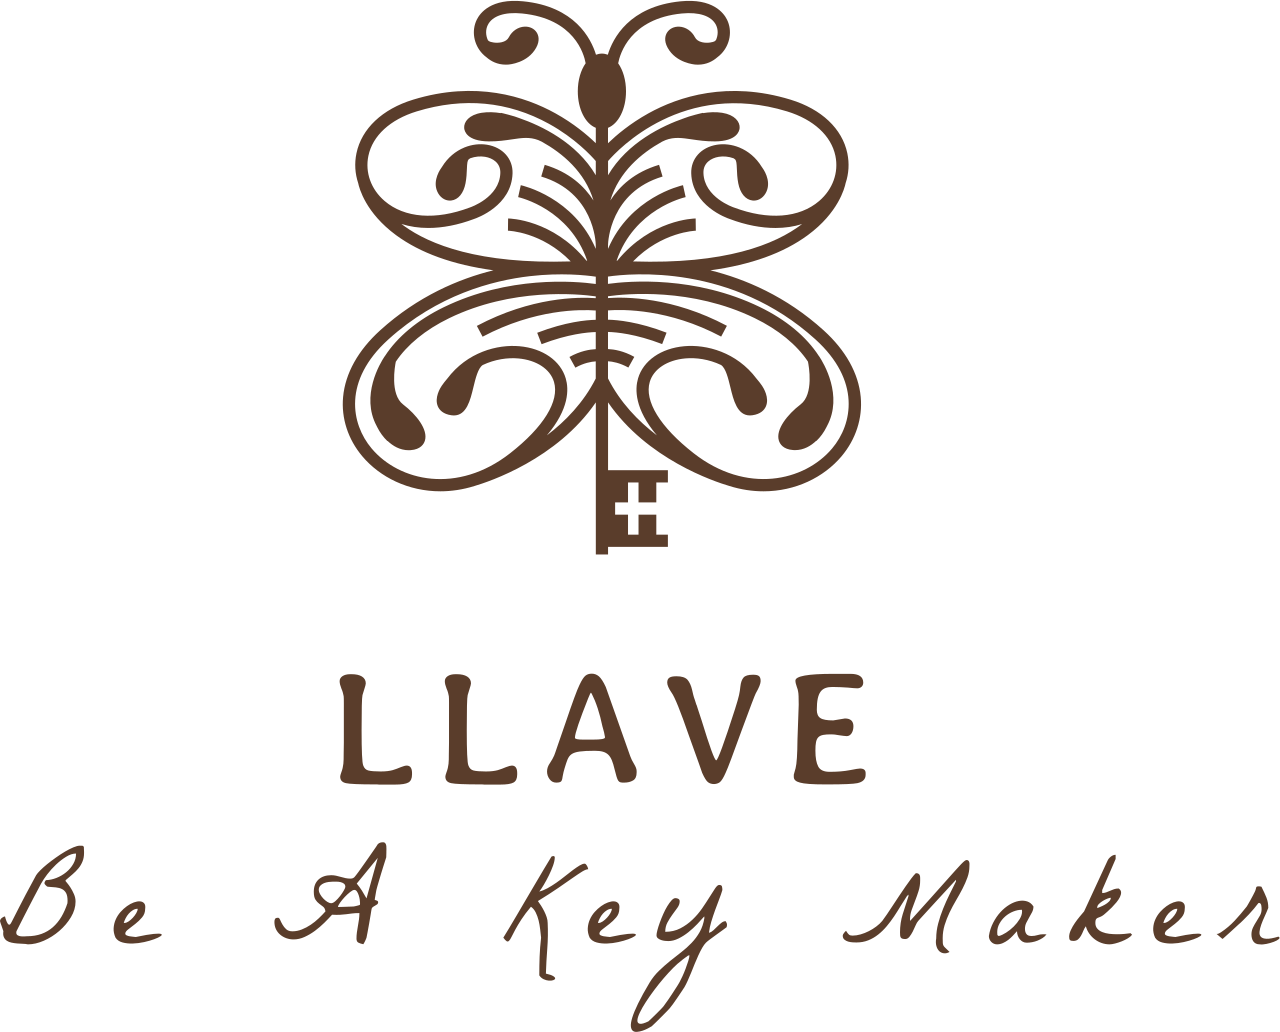 Llave's web page